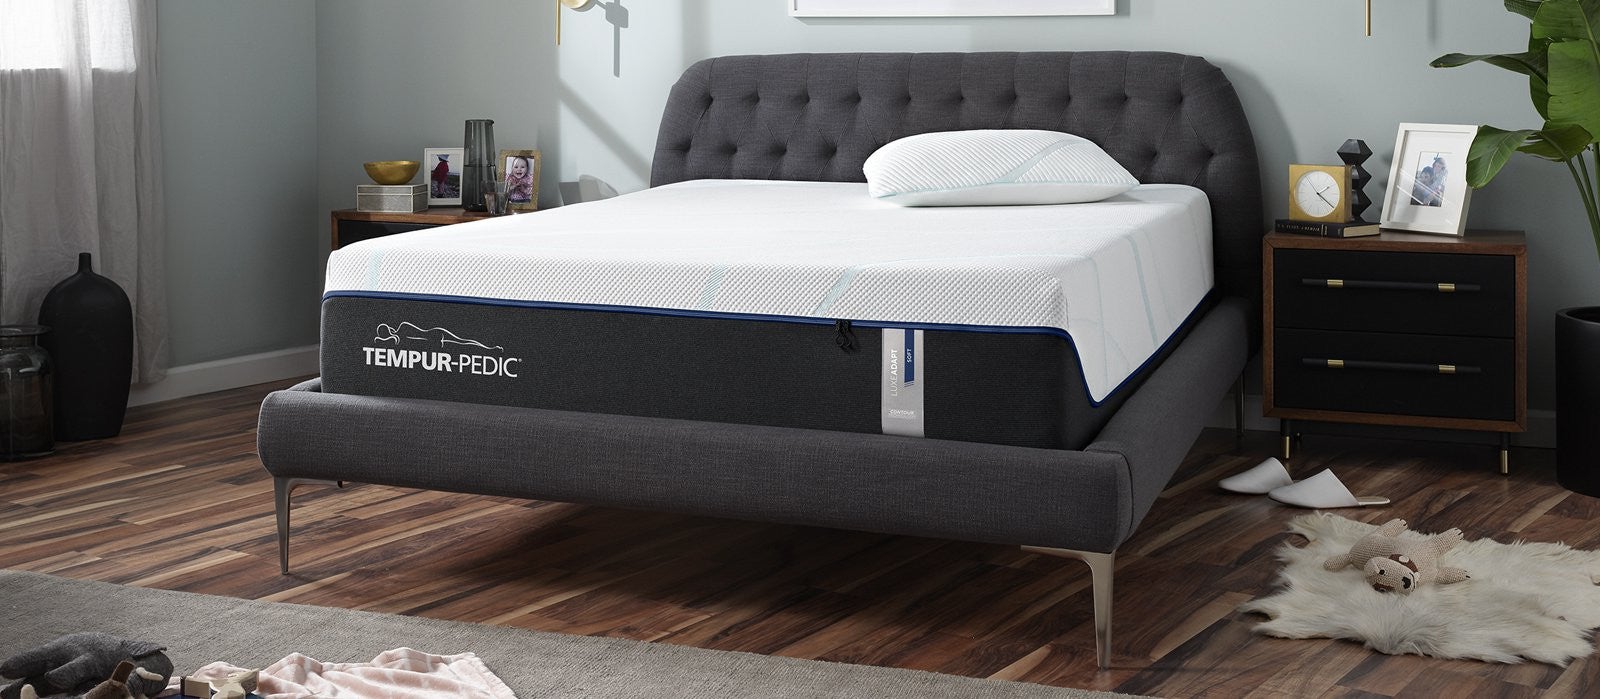 tempur-pedic full size mattress price